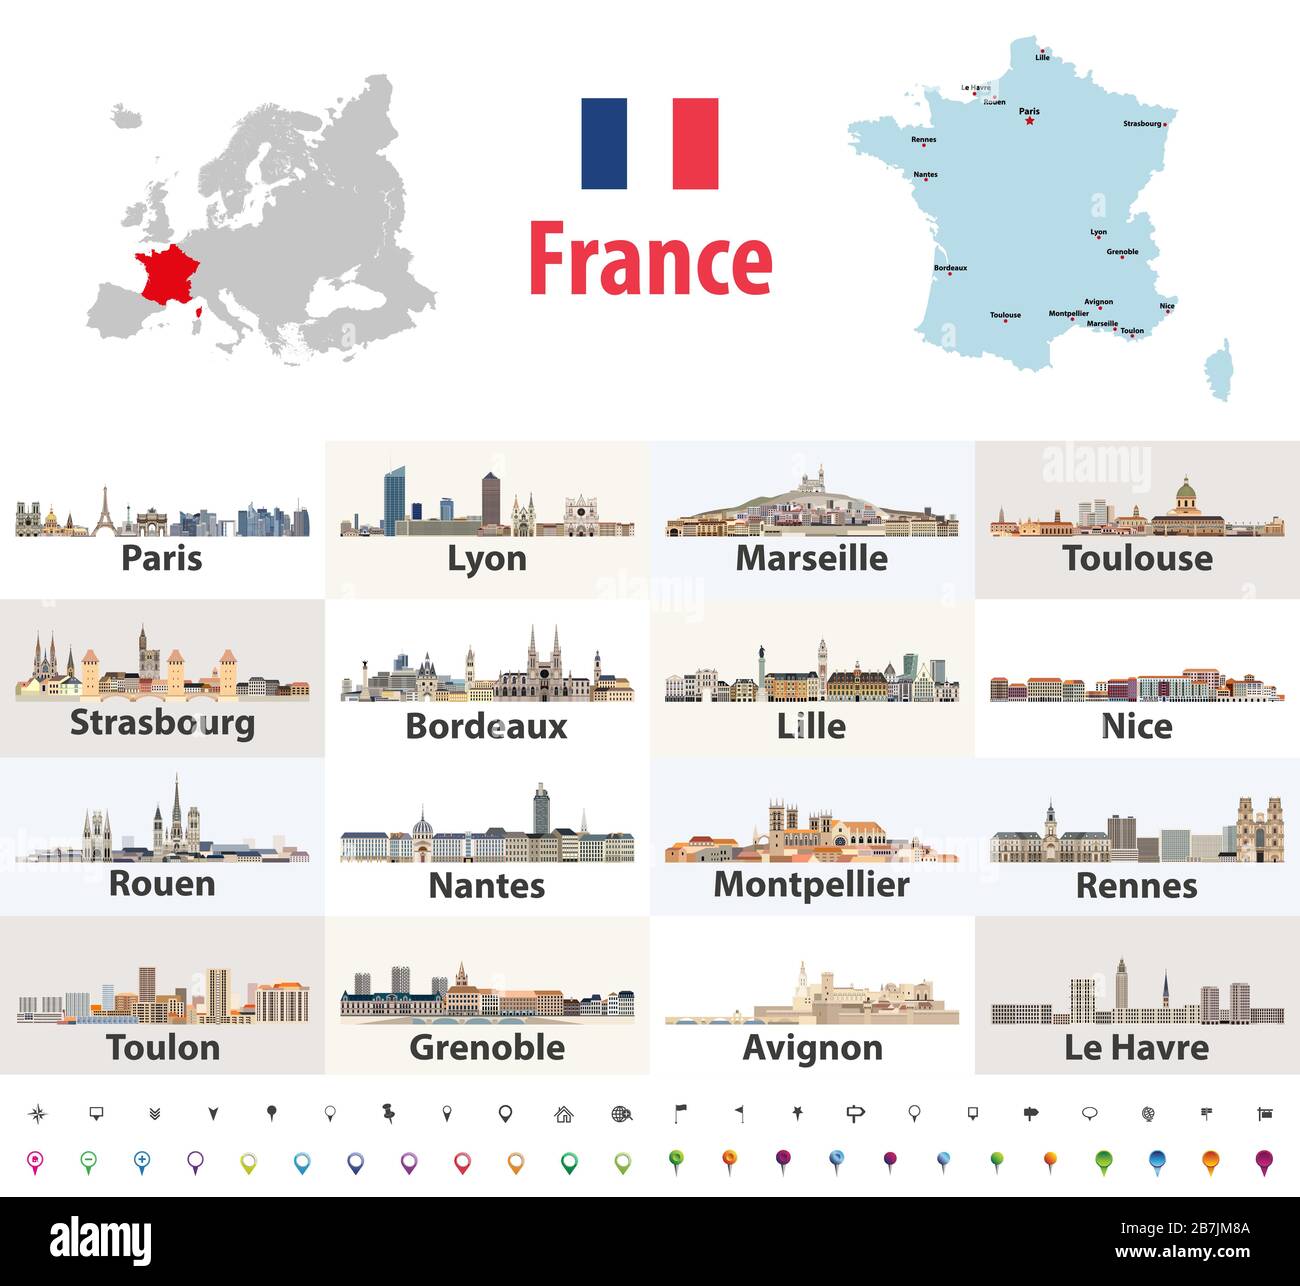 Mappa vettoriale della Francia con le principali città su di esso. Icone delle città francesi. Segnaletica per la navigazione e la posizione Illustrazione Vettoriale